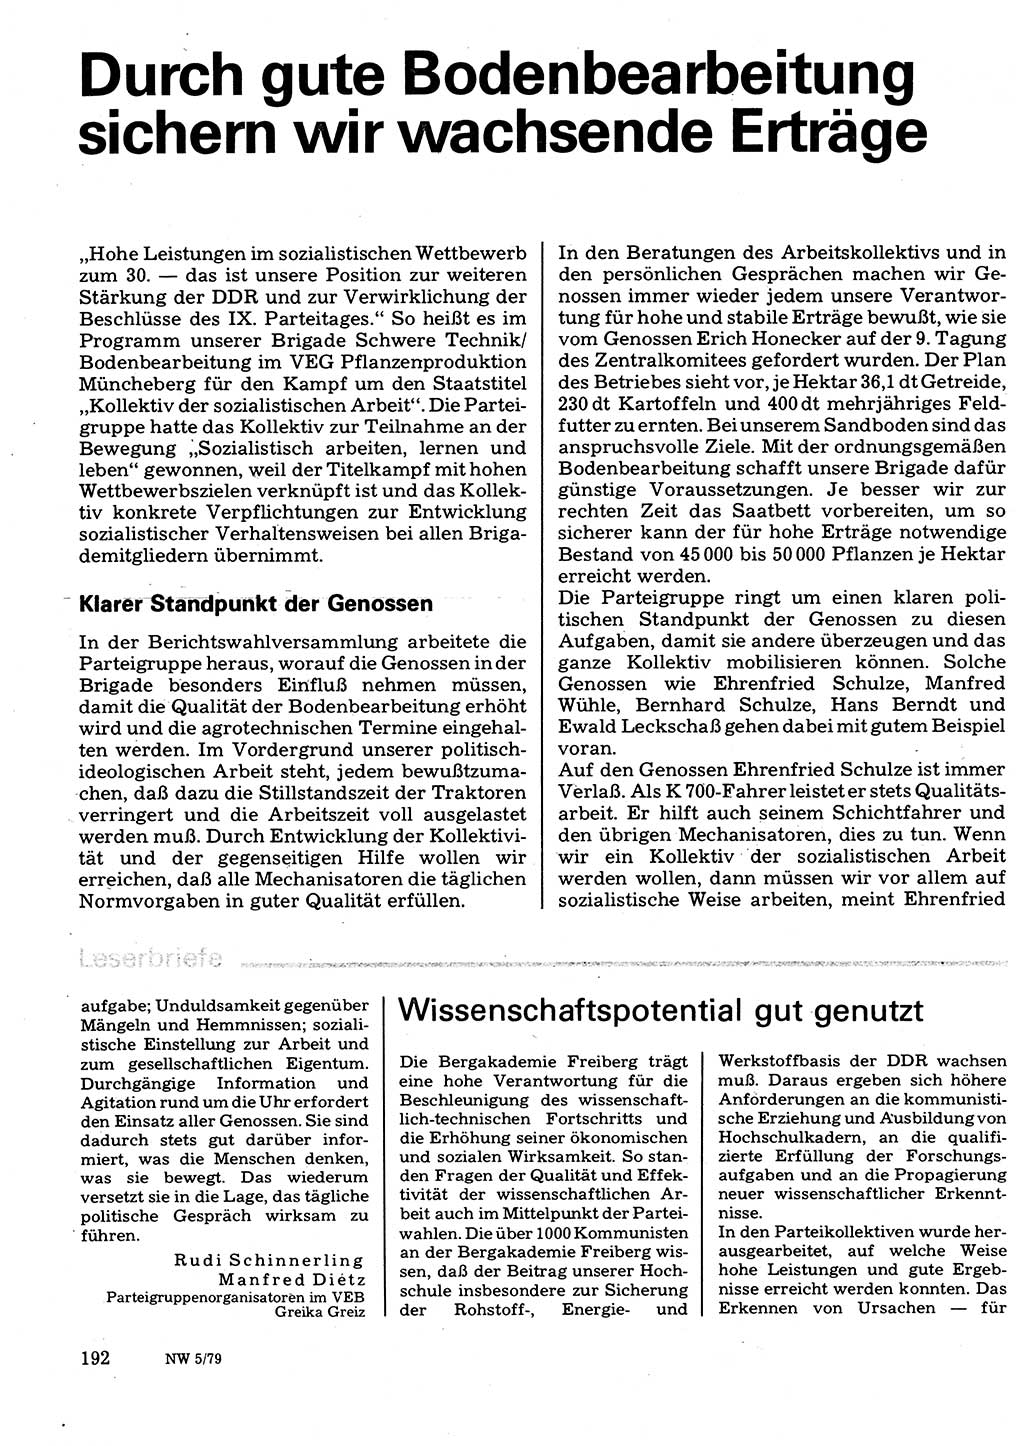 Neuer Weg (NW), Organ des Zentralkomitees (ZK) der SED (Sozialistische Einheitspartei Deutschlands) für Fragen des Parteilebens, 34. Jahrgang [Deutsche Demokratische Republik (DDR)] 1979, Seite 192 (NW ZK SED DDR 1979, S. 192)